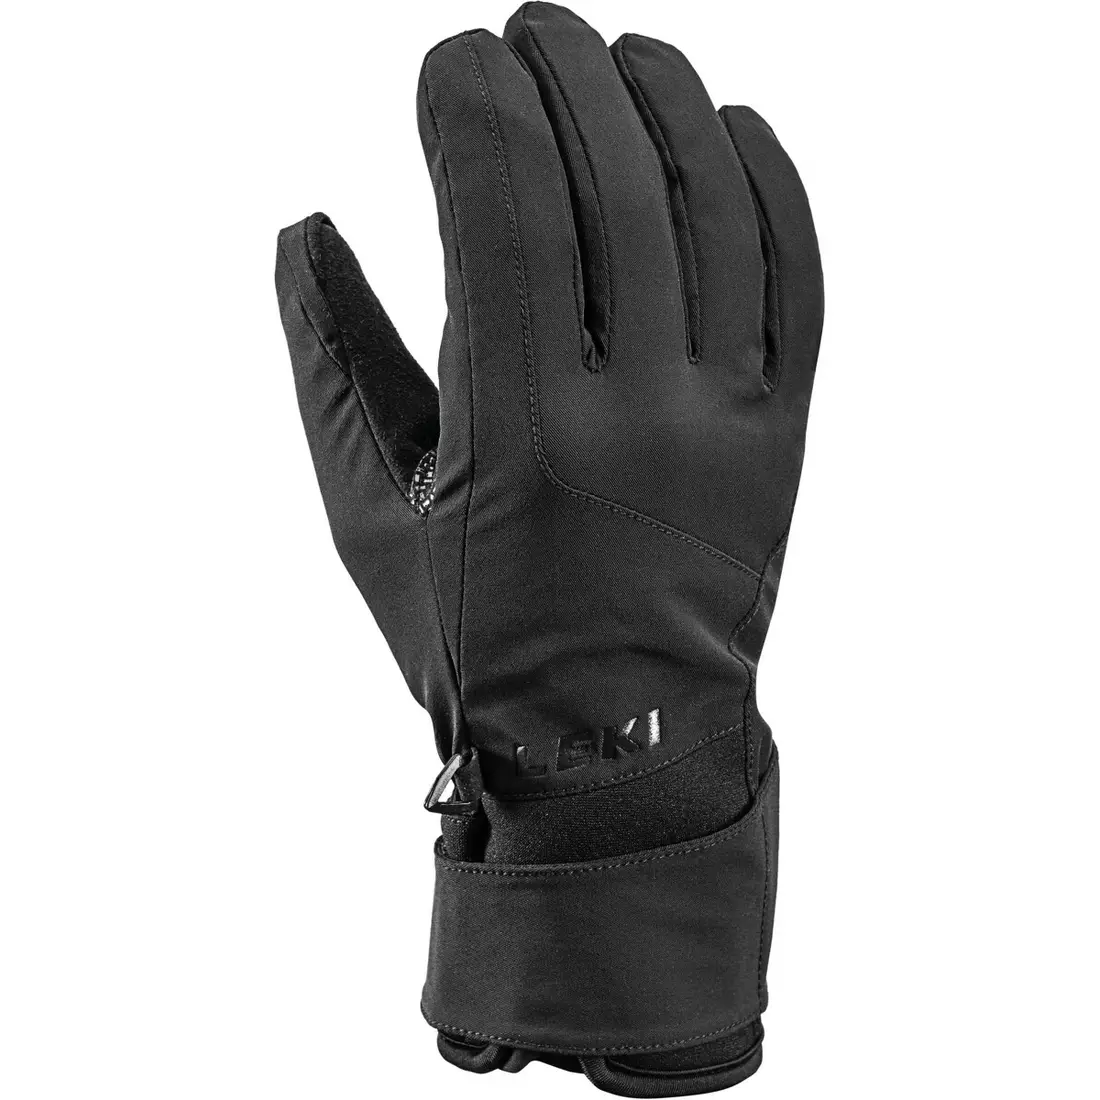 LEKI zimní rukavice MOVIN black 651806301105